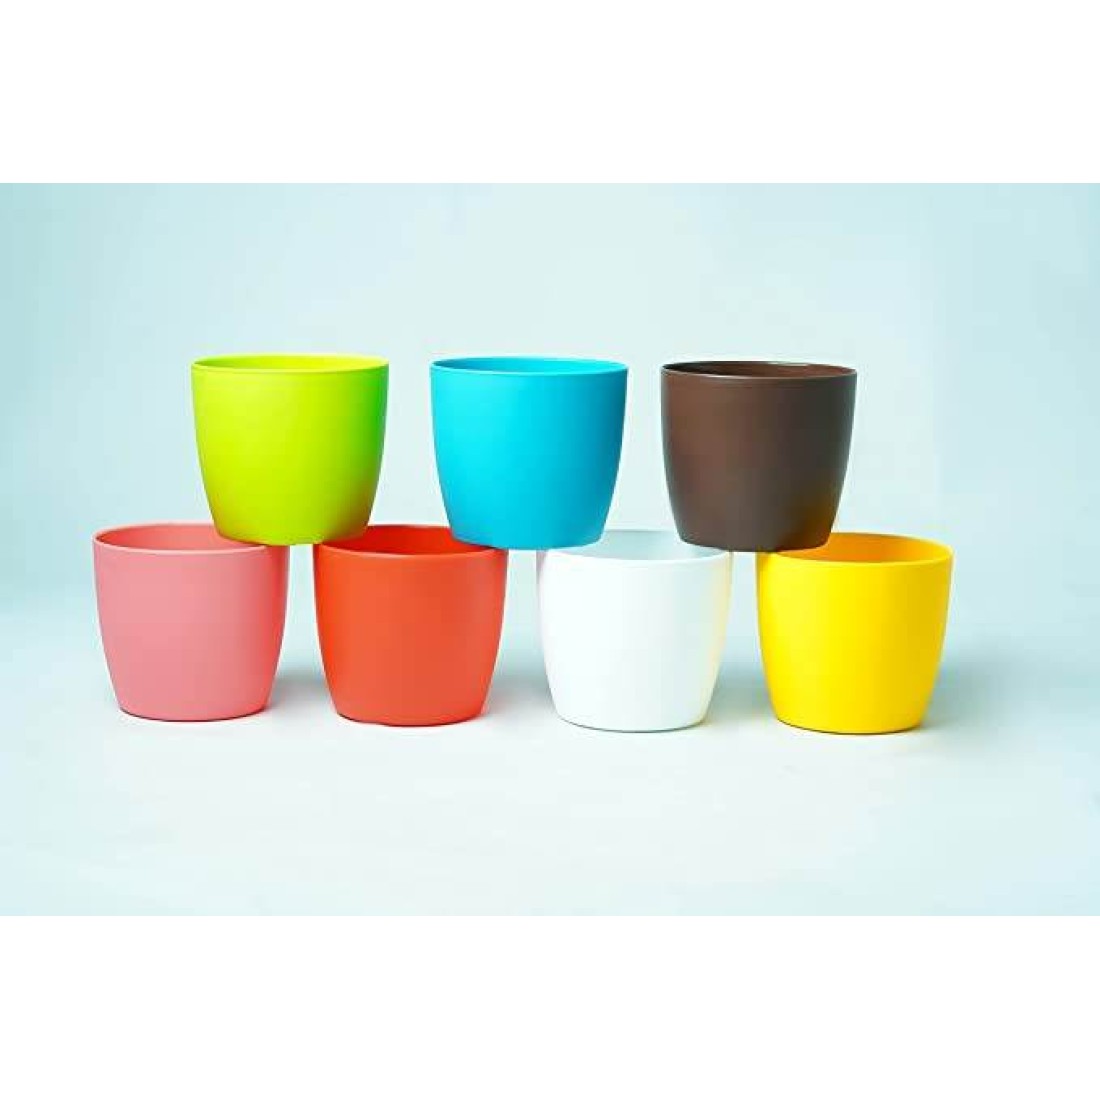 Round Plastic Flower Pots Size 4